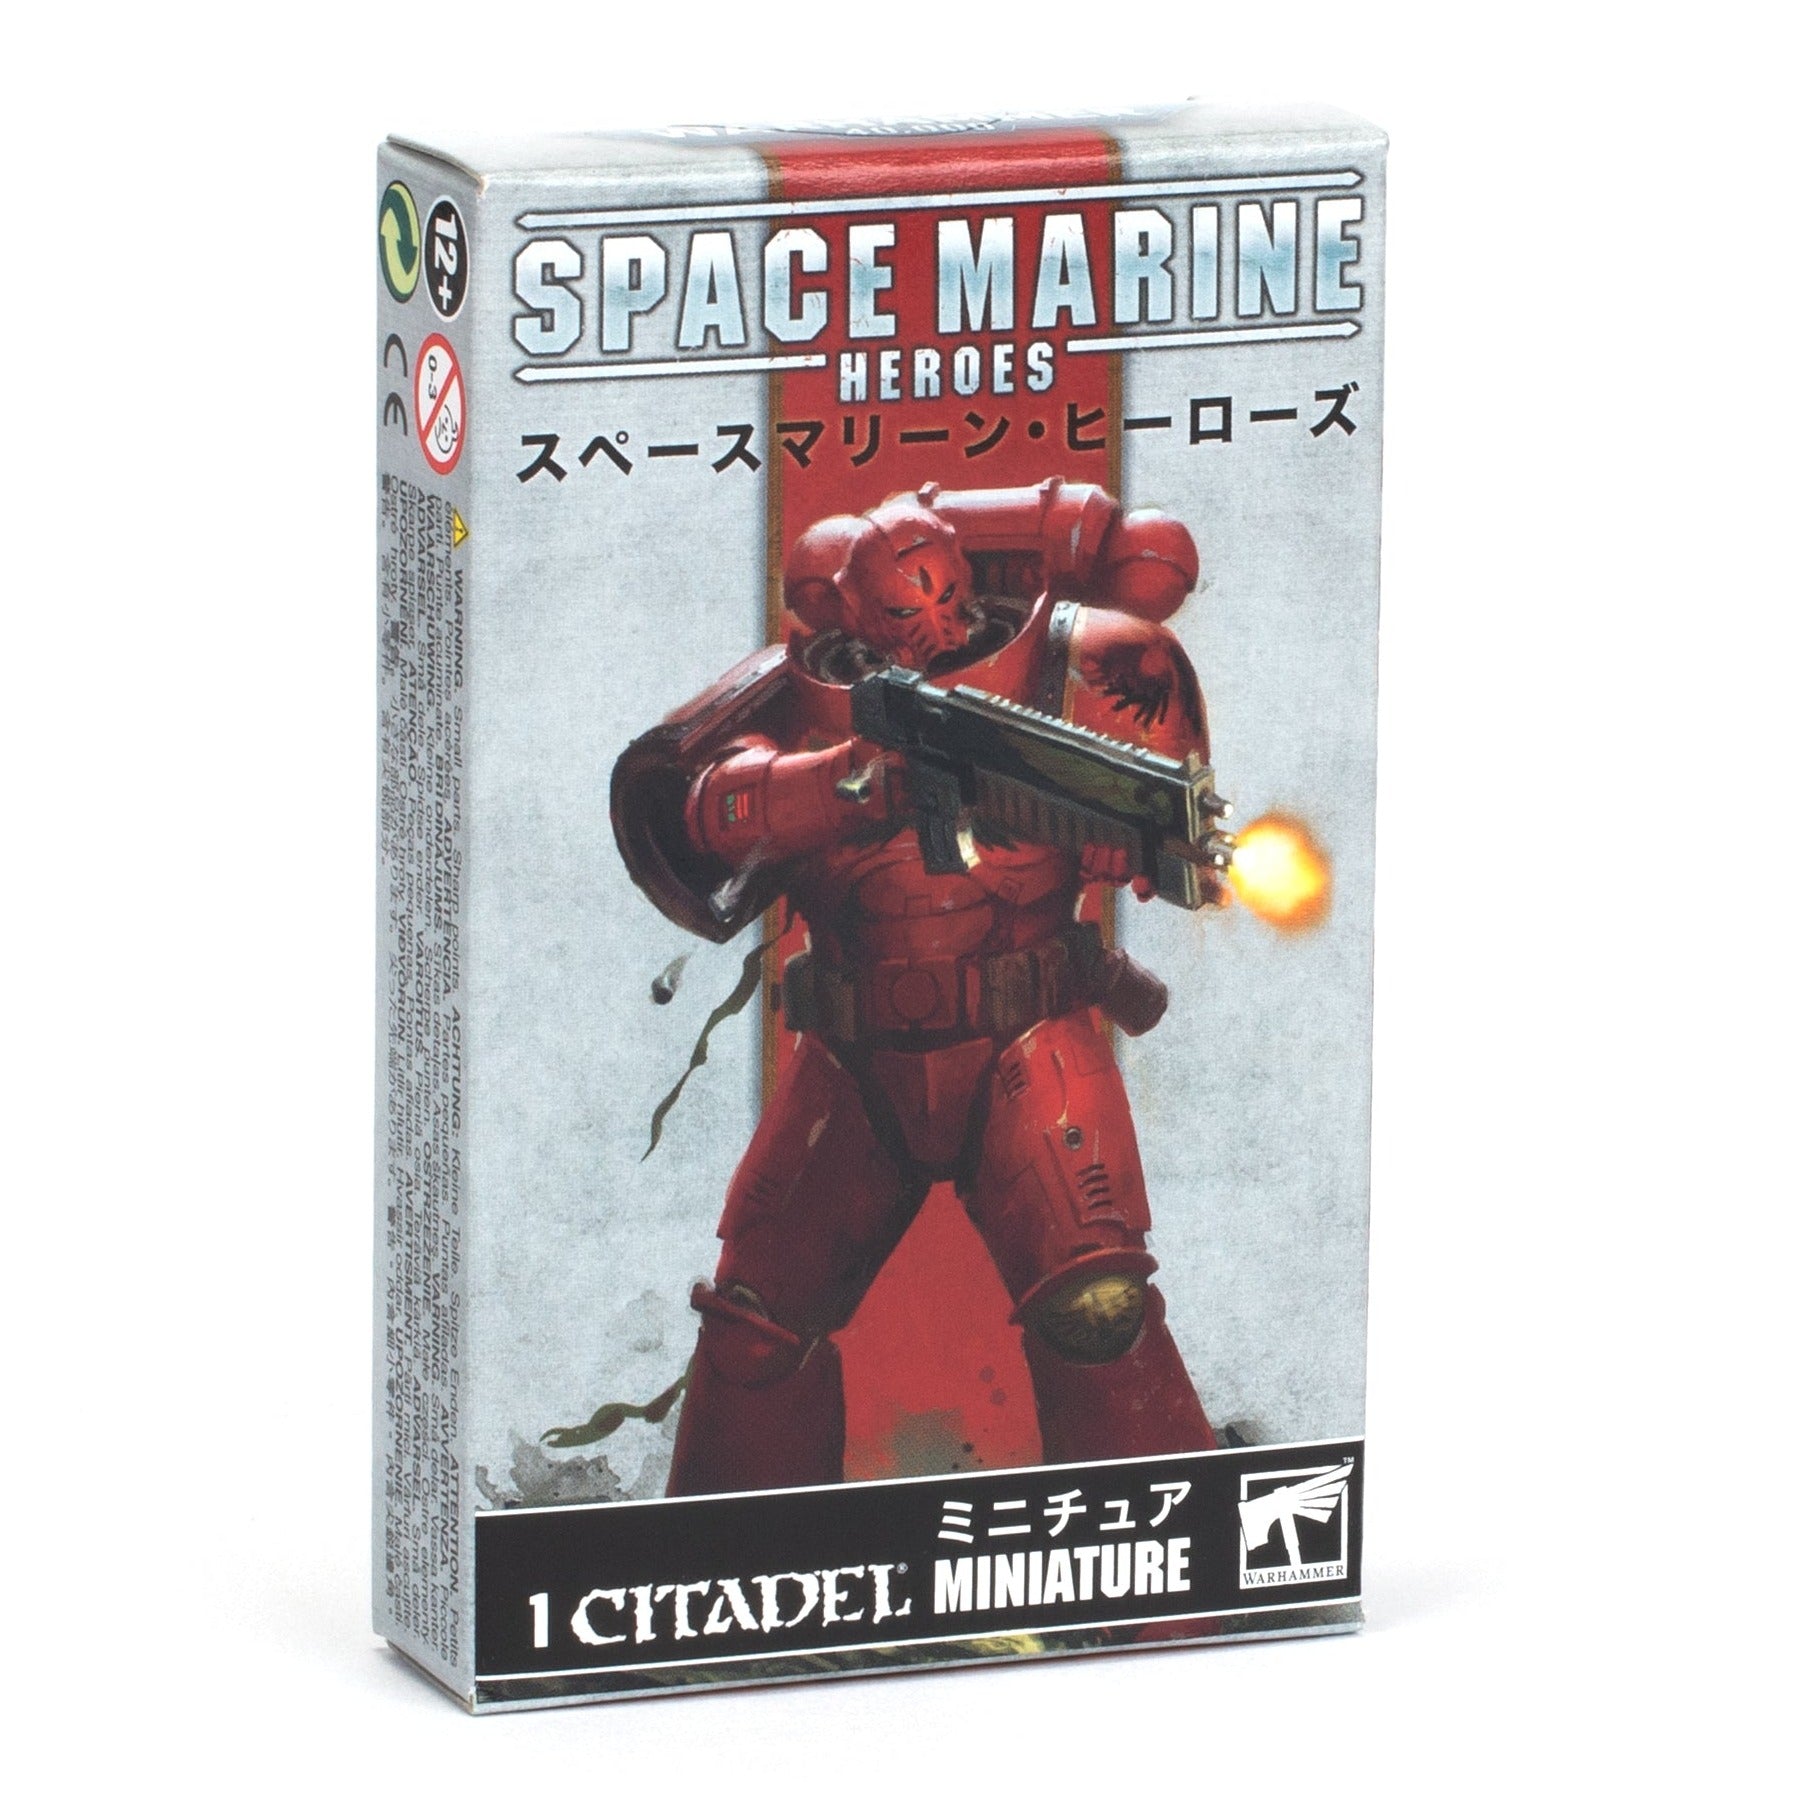 Space Marine Heroes 2 Blind Box Pack